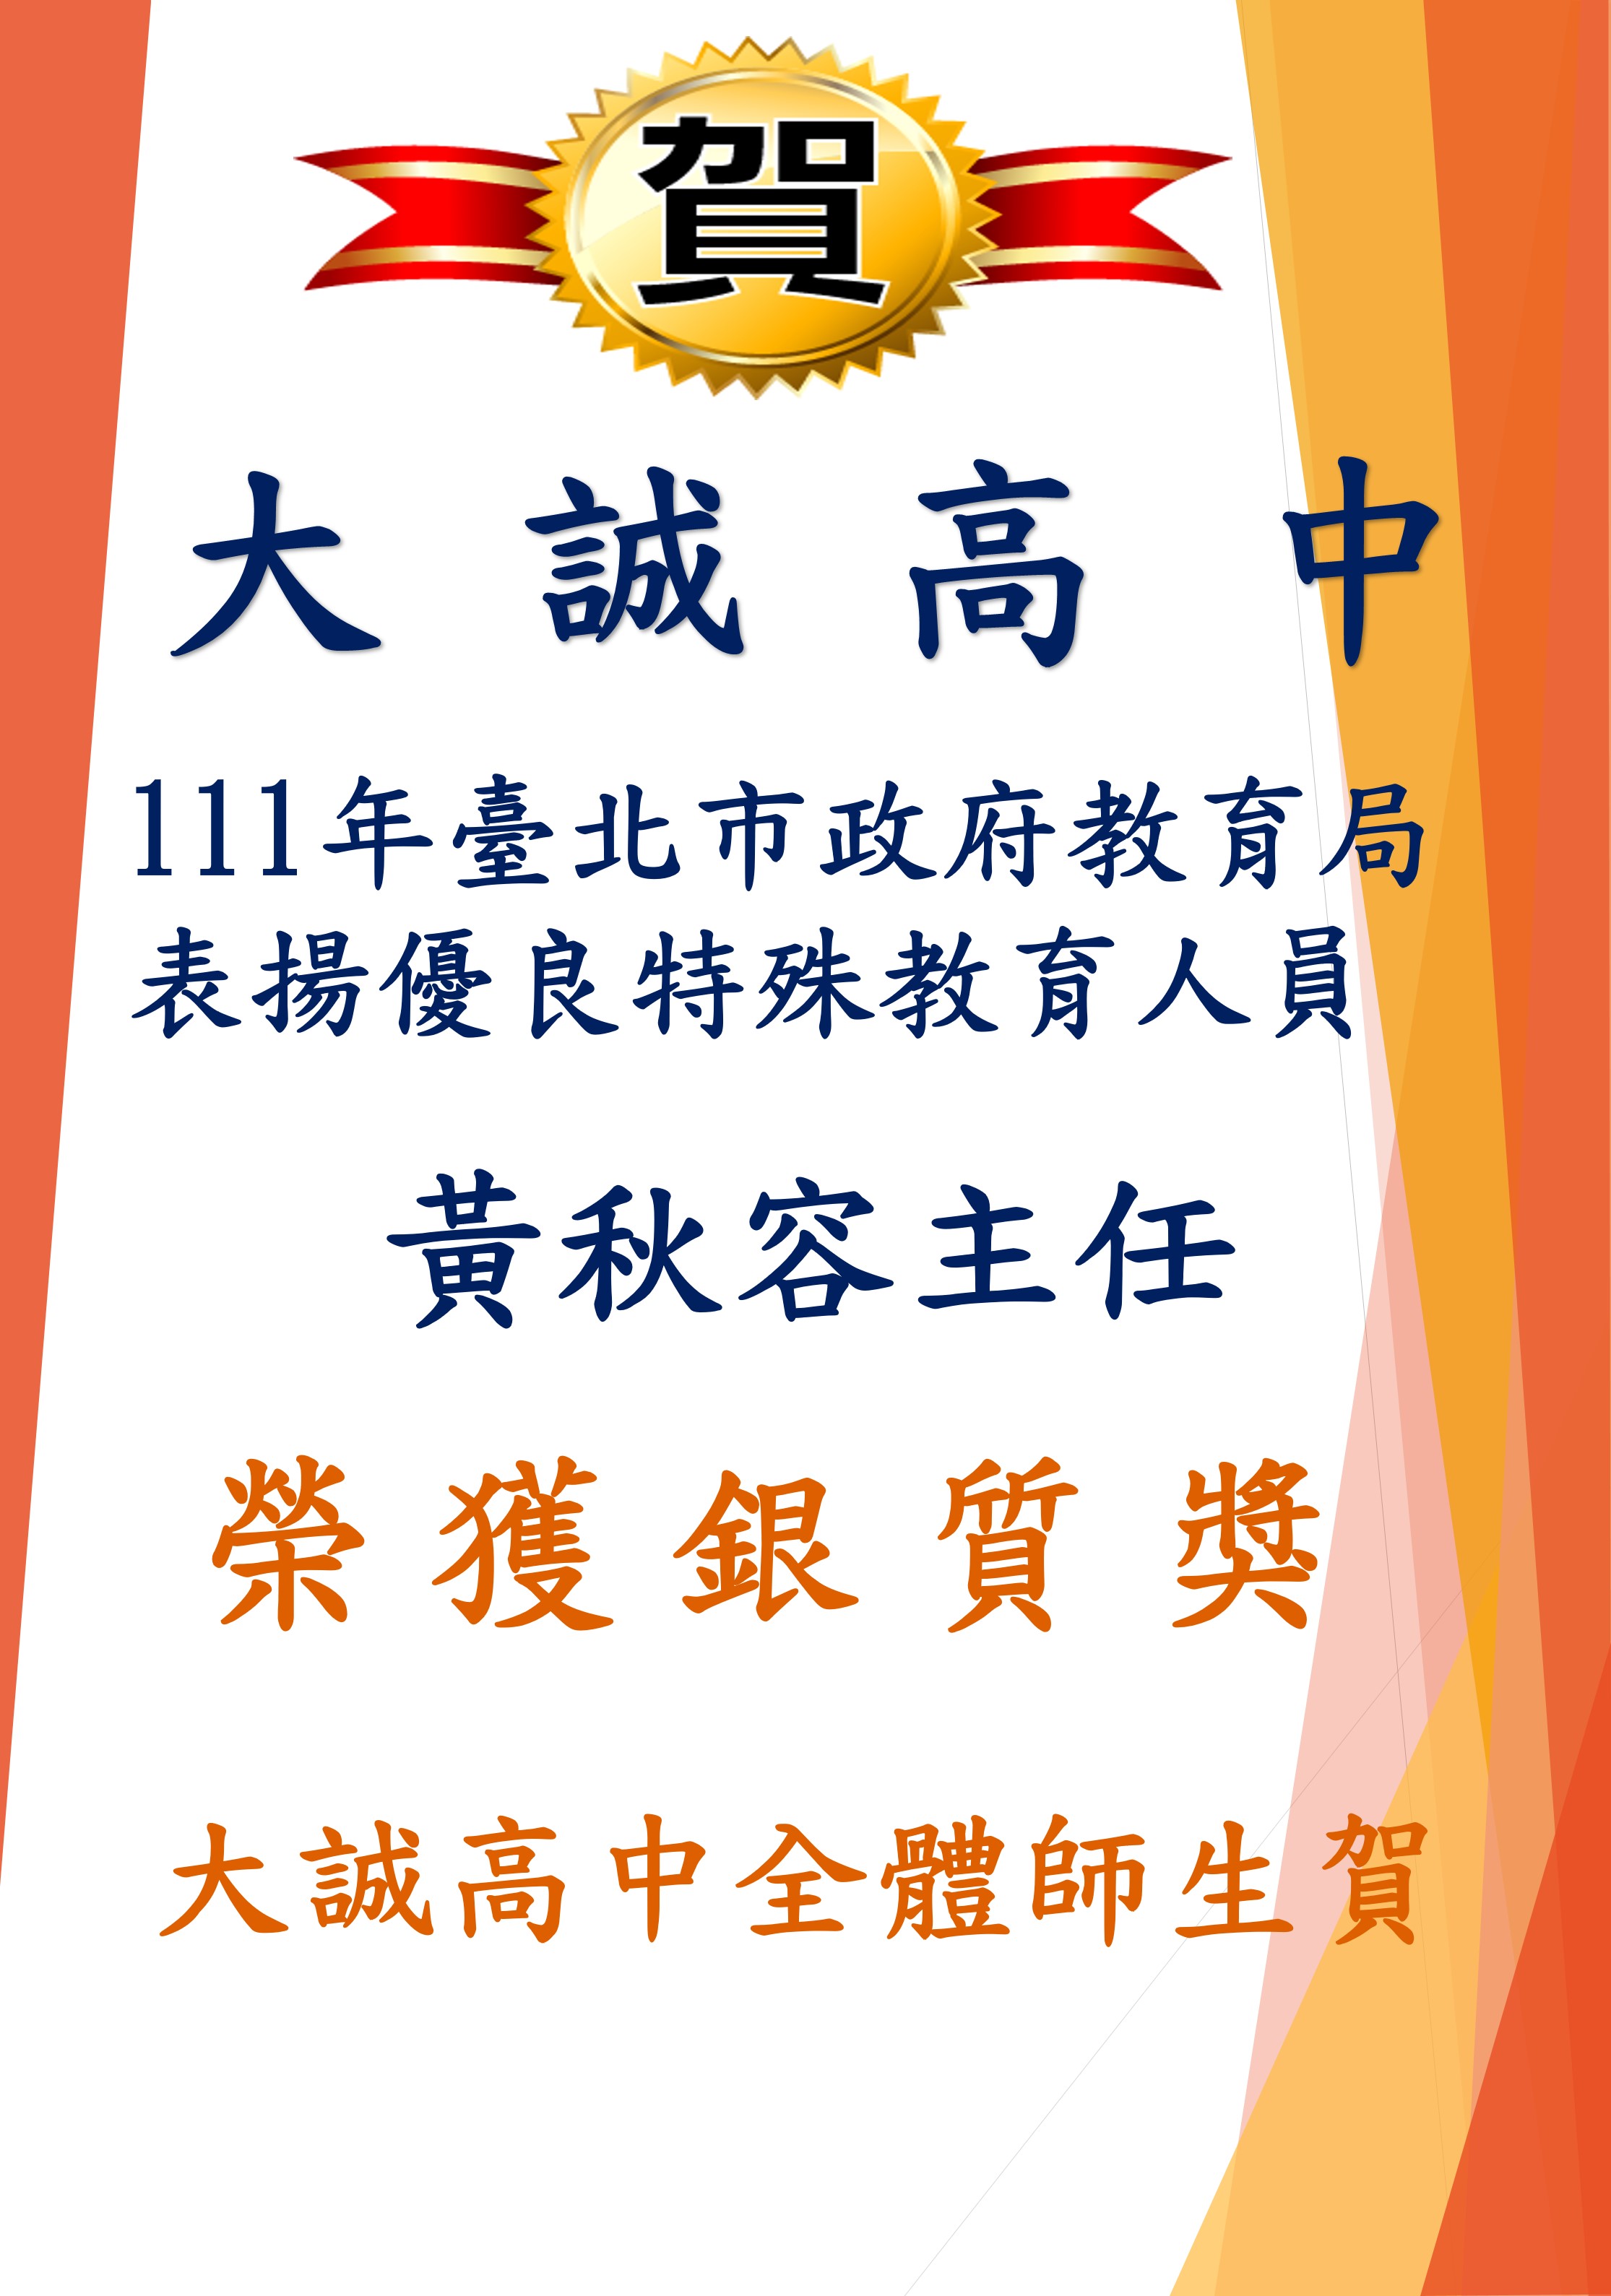 本校輔導室榮獲111年臺北市政府教育局表揚優良特殊教育人員(唯一私校代表)